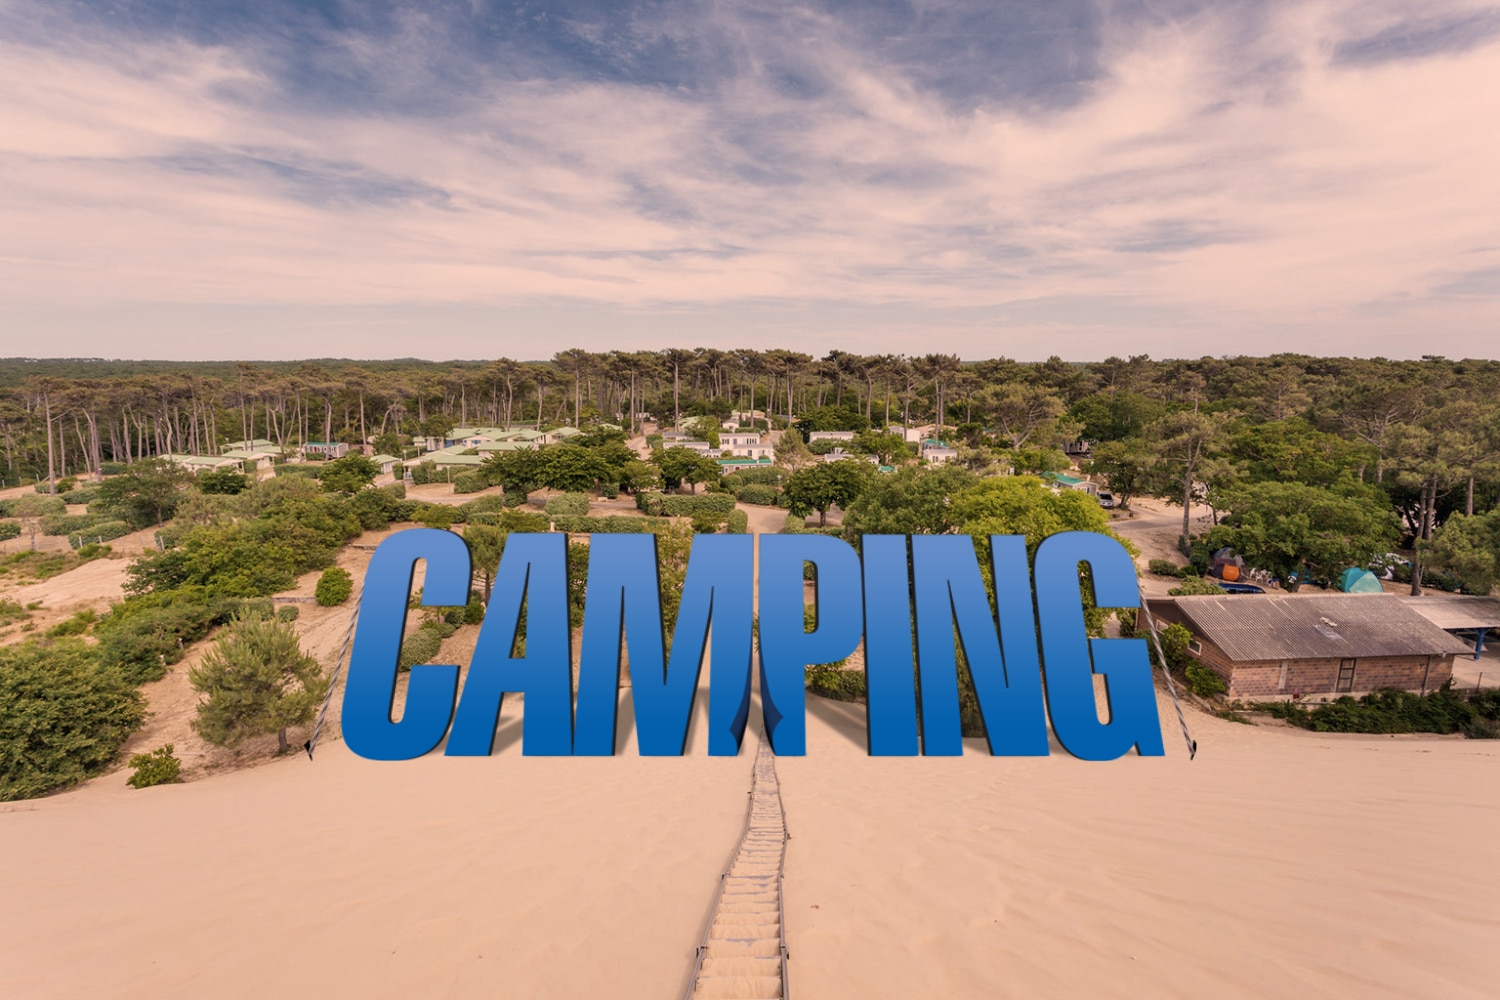 Camping - Le film avec Franck Dubosc et Gérard Lanvin tourné au camping de la Dune à la Teste-de-Buch sur le Bassin d'Arcachon